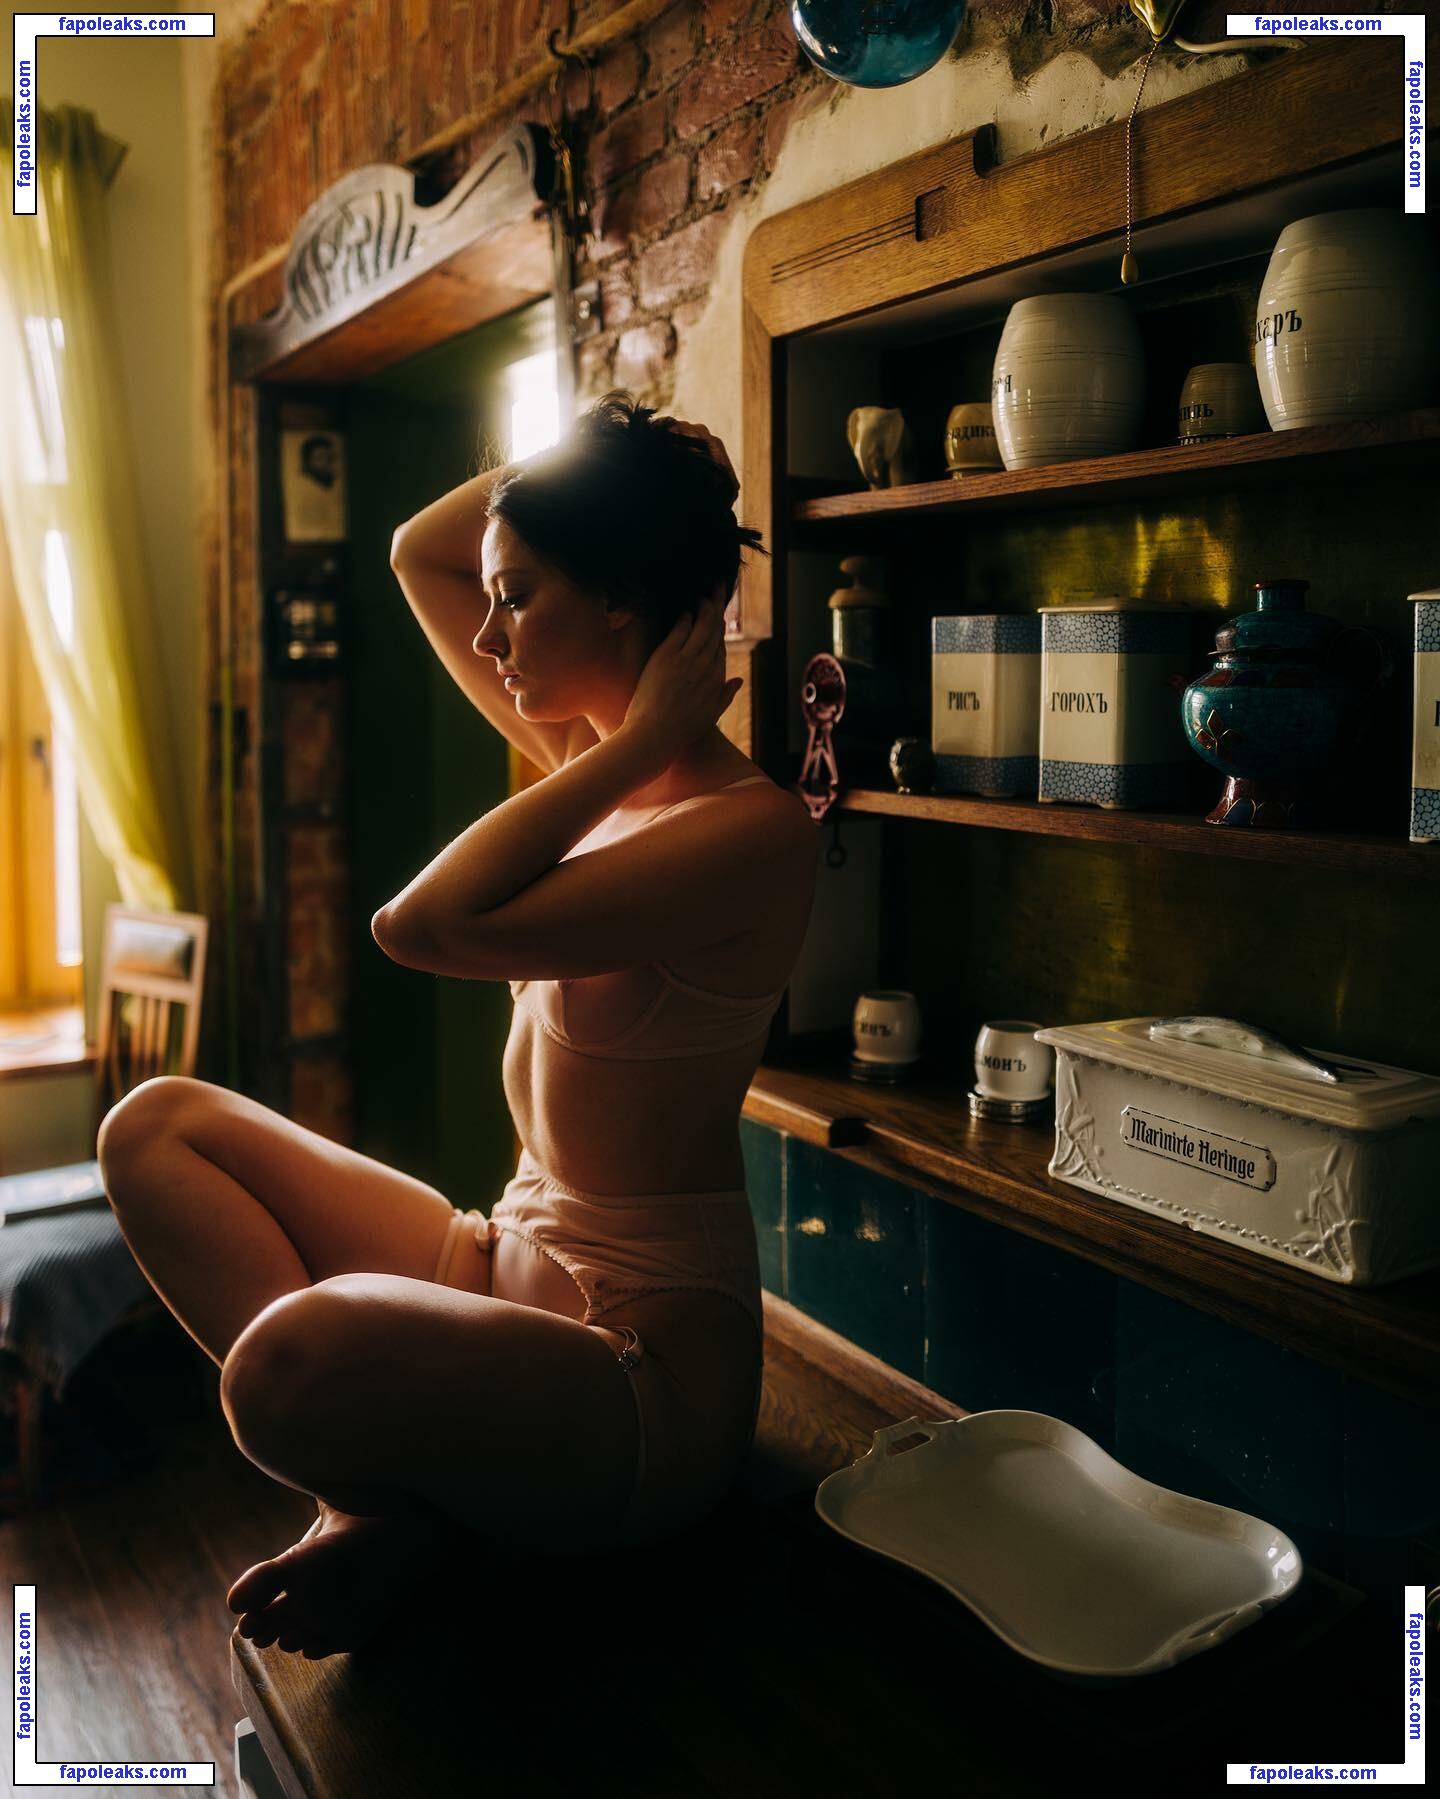 katya_mozhina / Katenka Mozhina / katyamozhina nude photo #0072 from OnlyFans